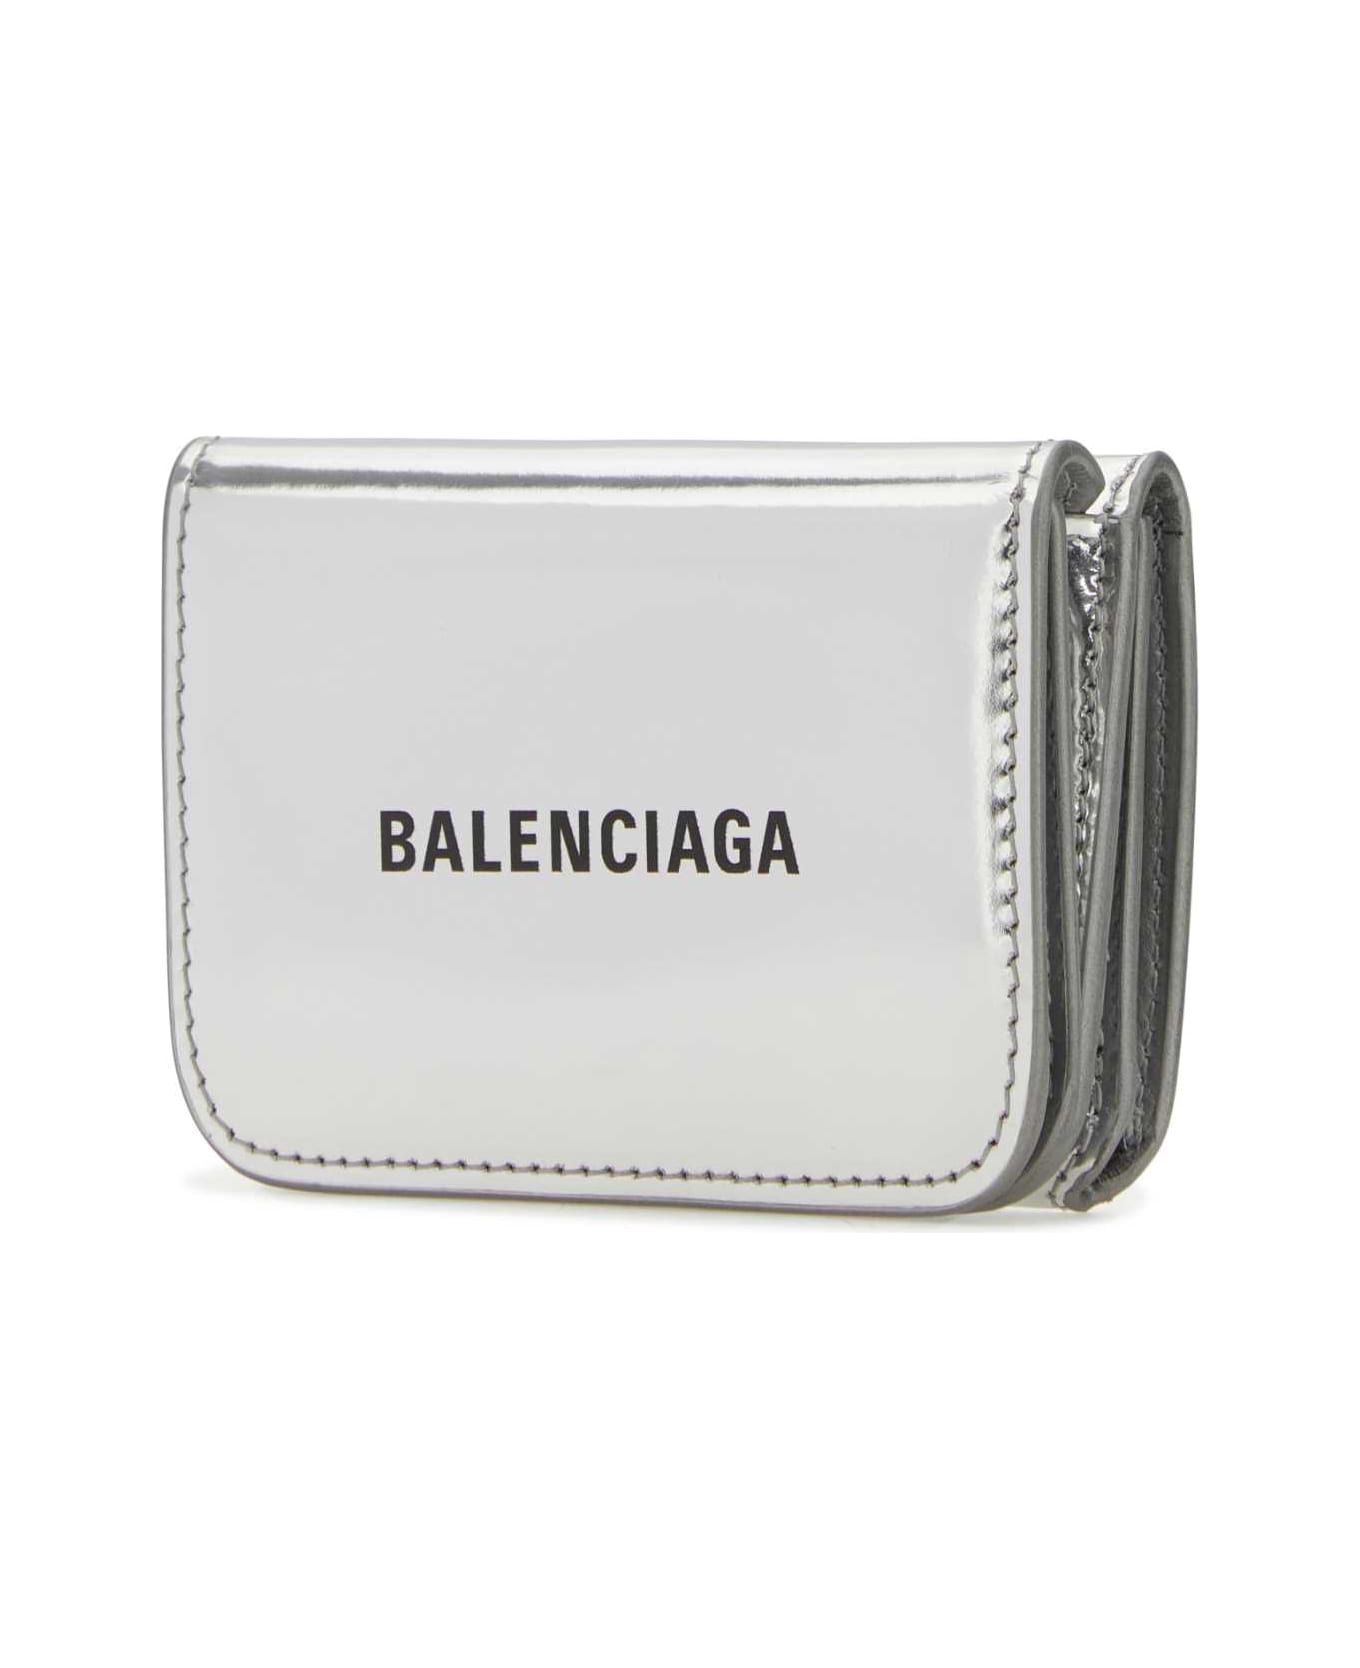 Balenciaga Silver Leather Wallet - 8160 財布